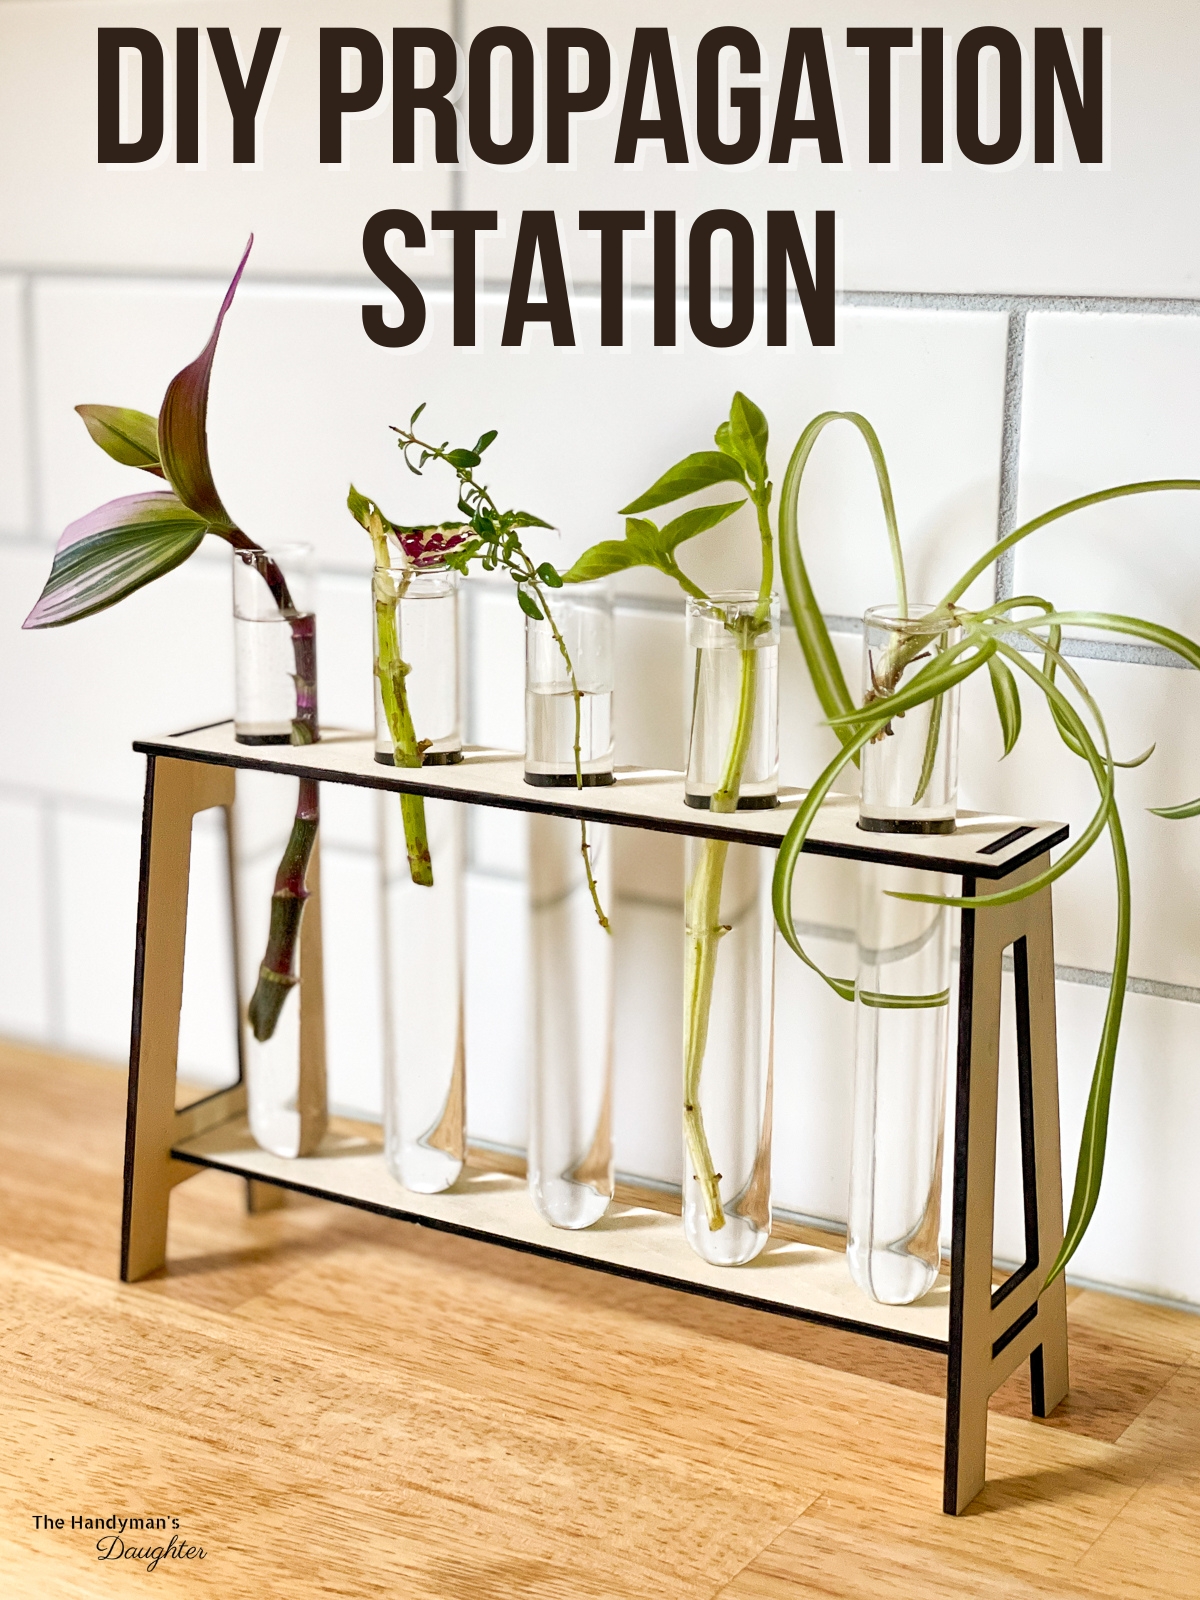 DIY propagation station